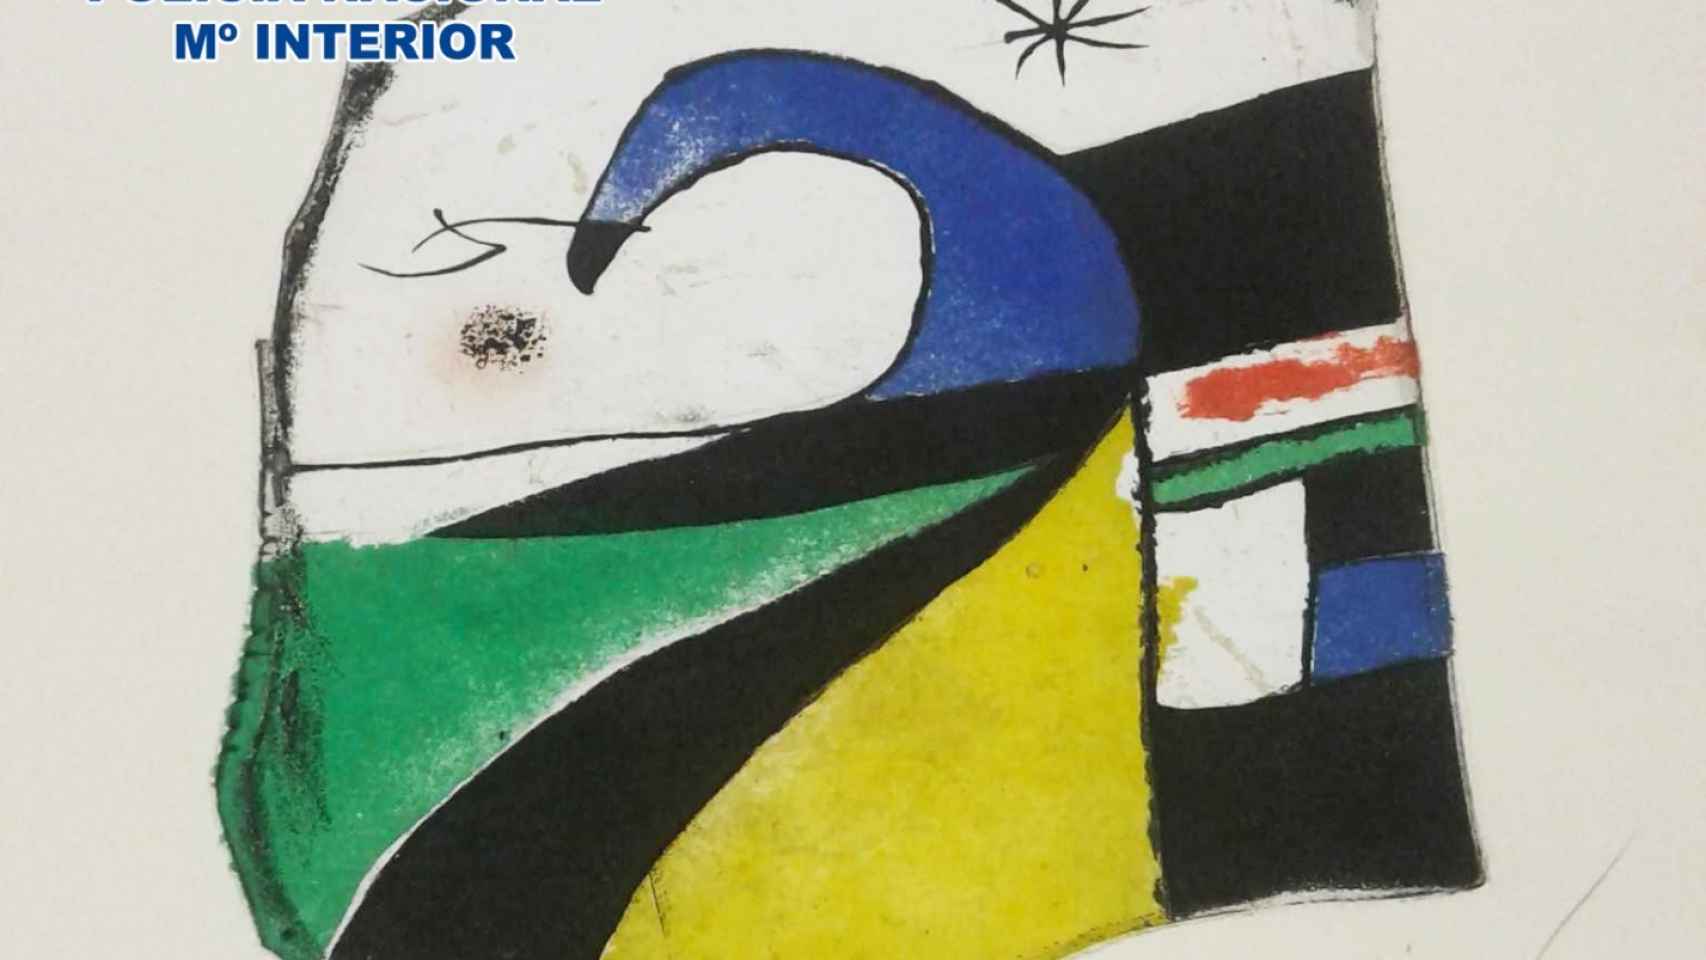 La obra de Miró.